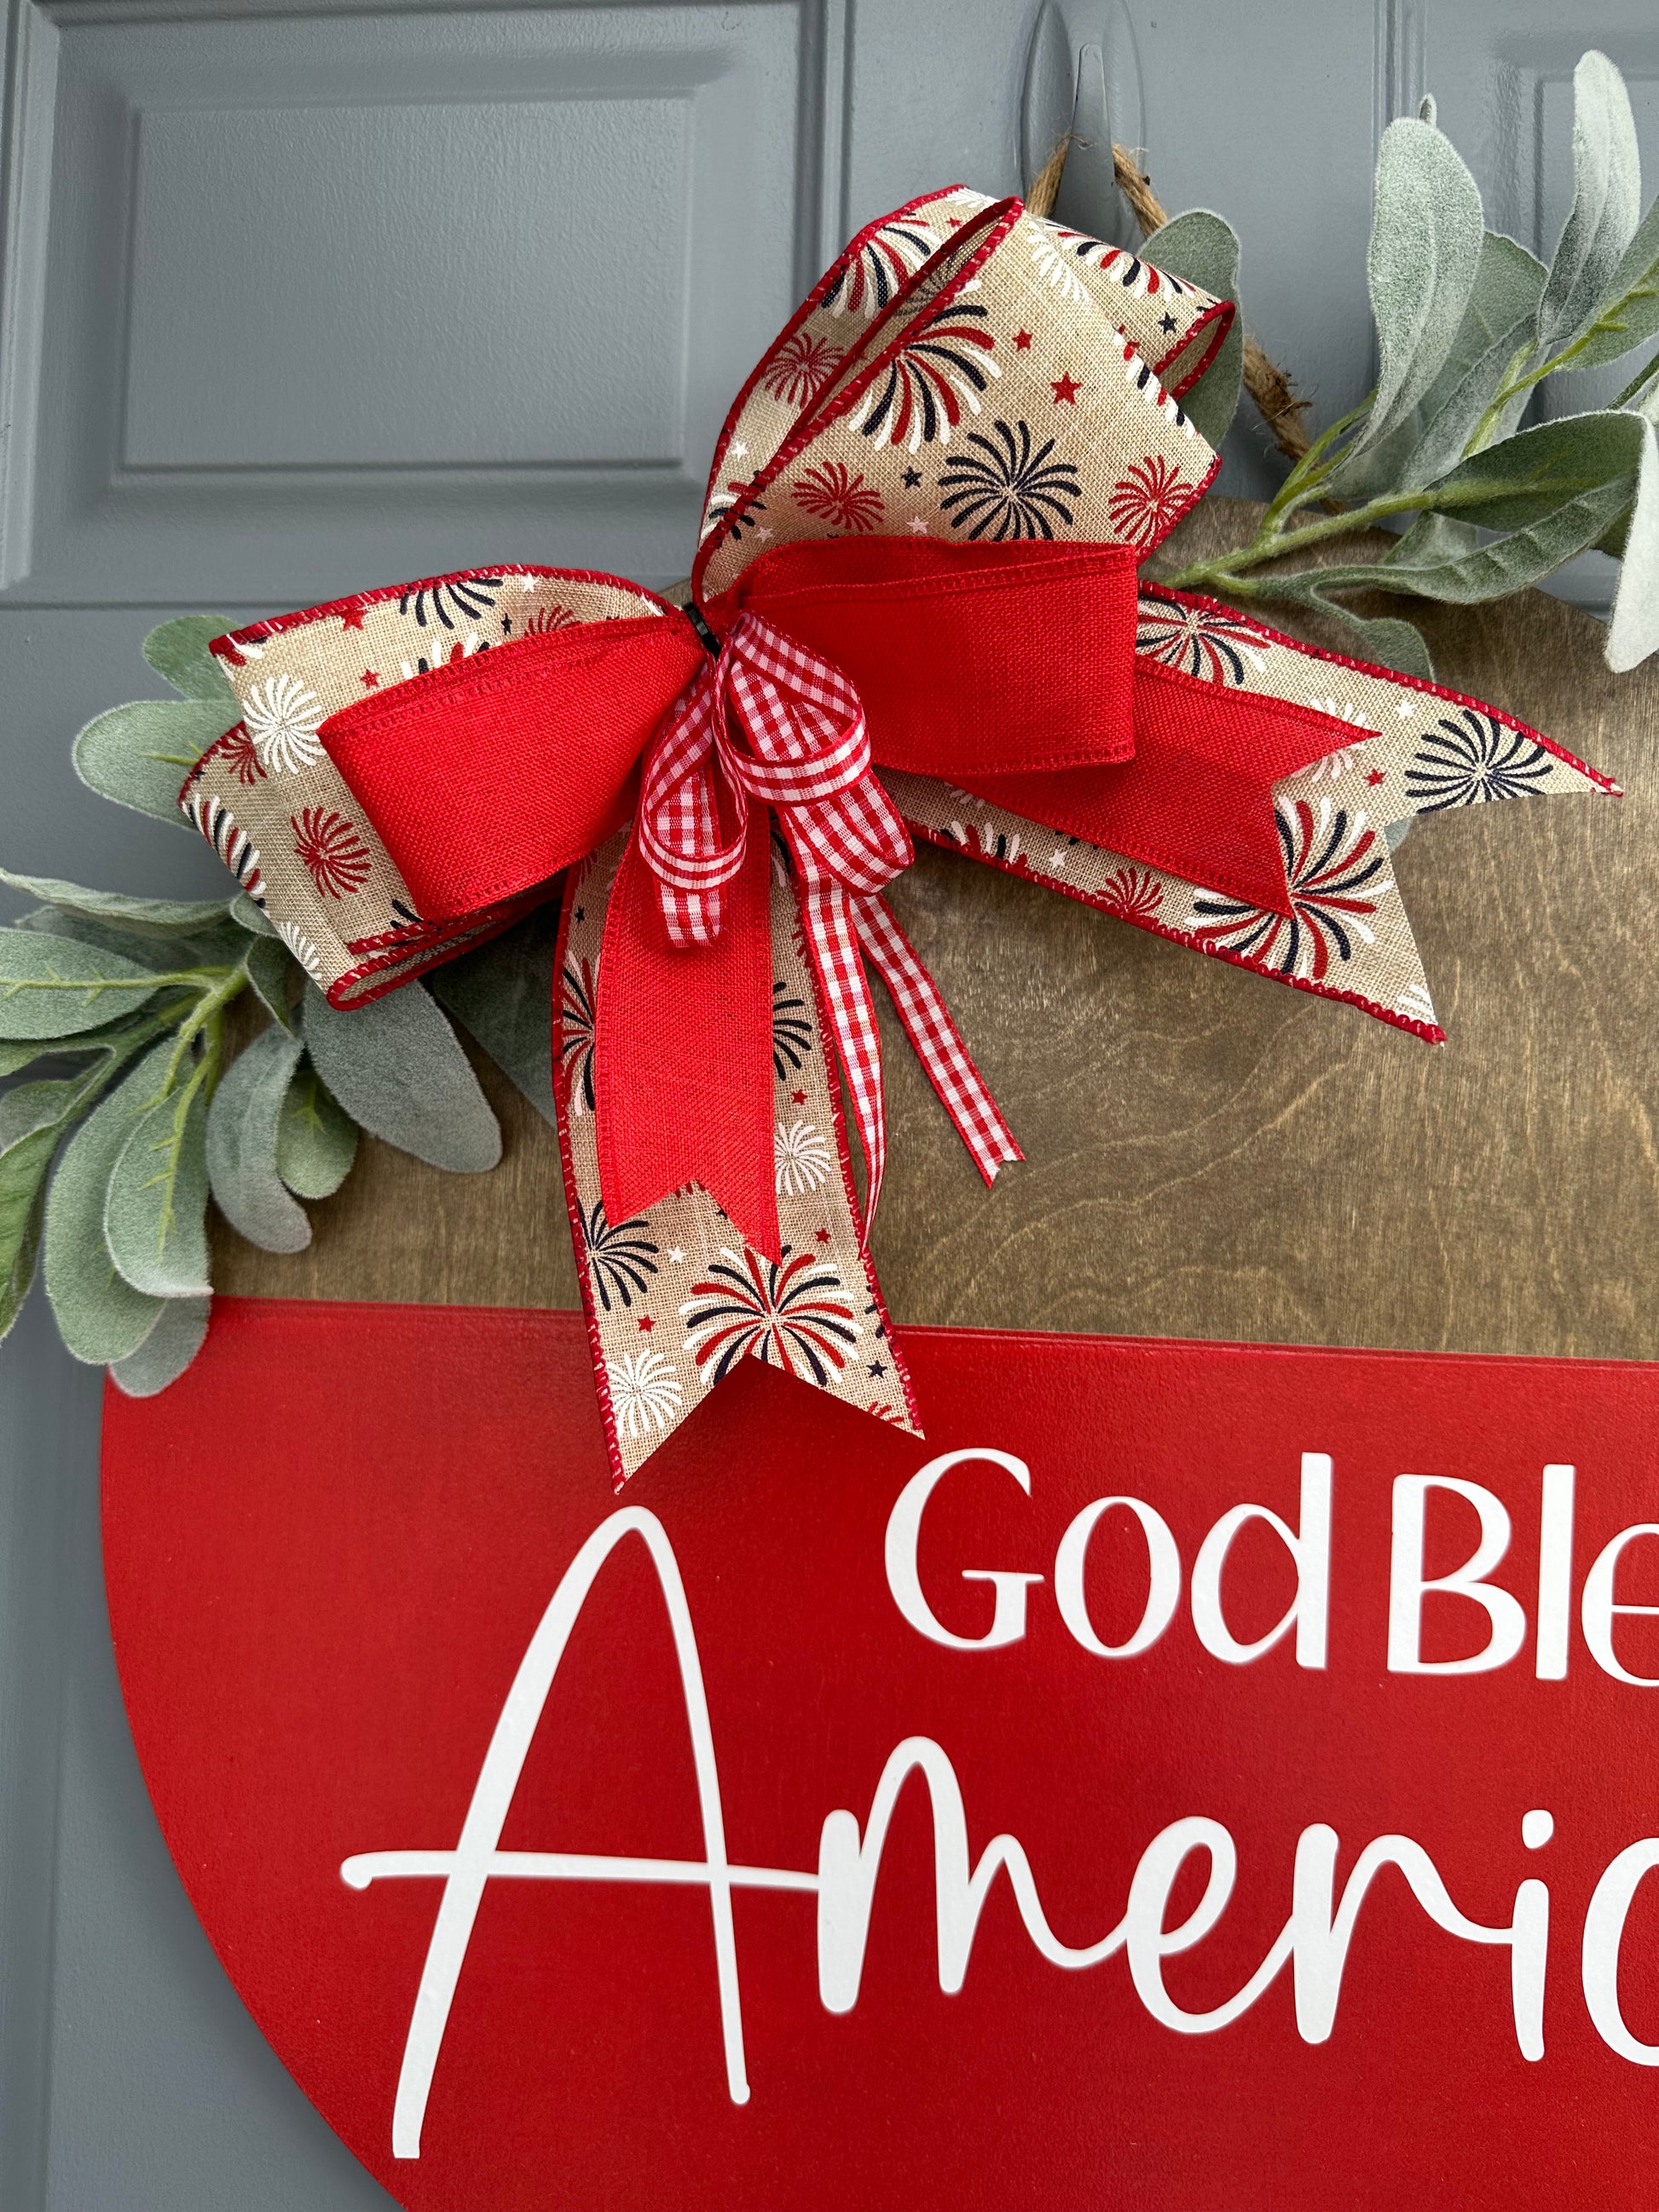 God Bless America Door Hanger - Willow Love Bug Designs 